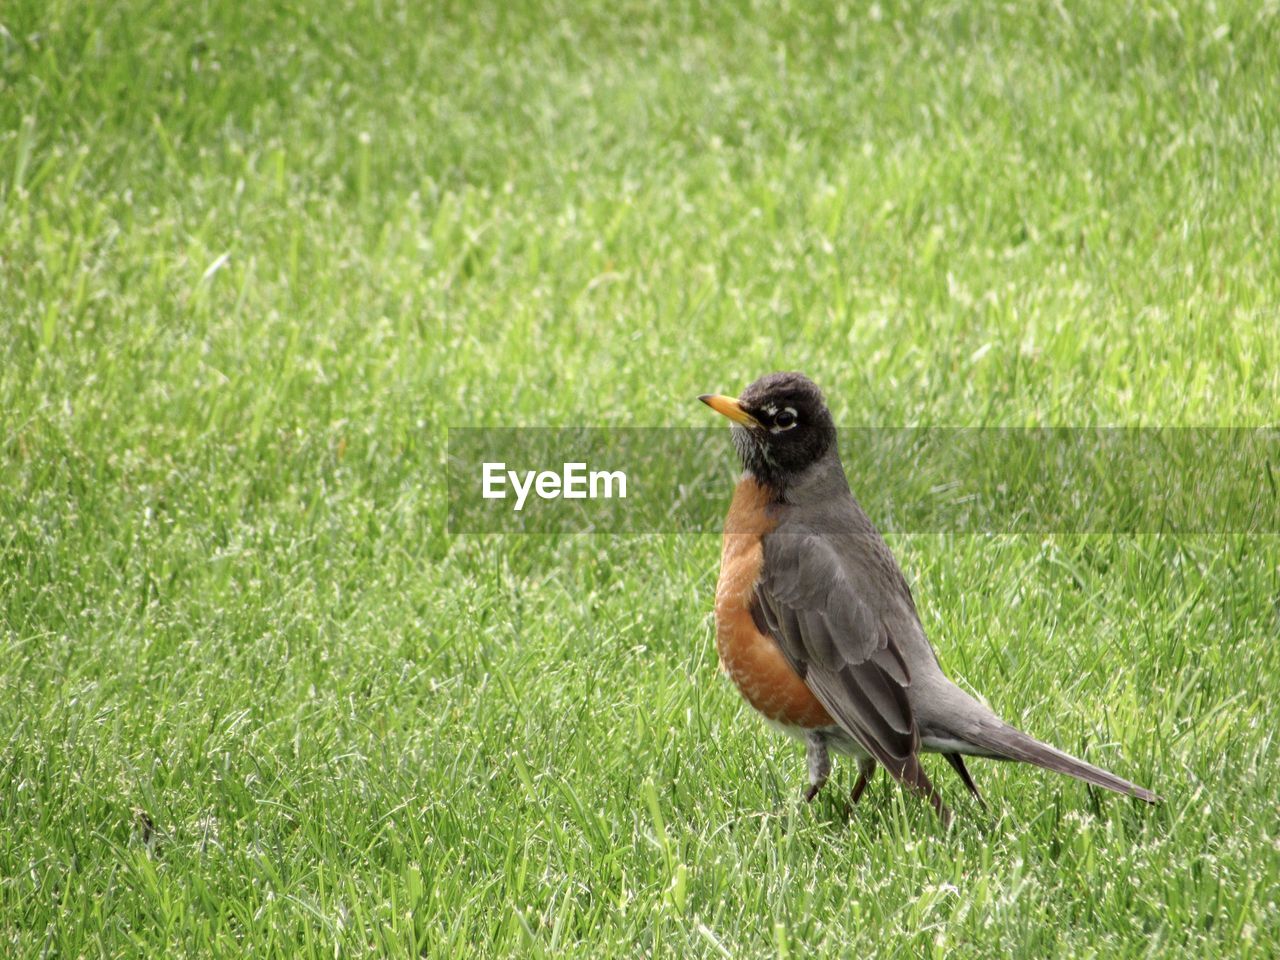 An american robin bird in grass 